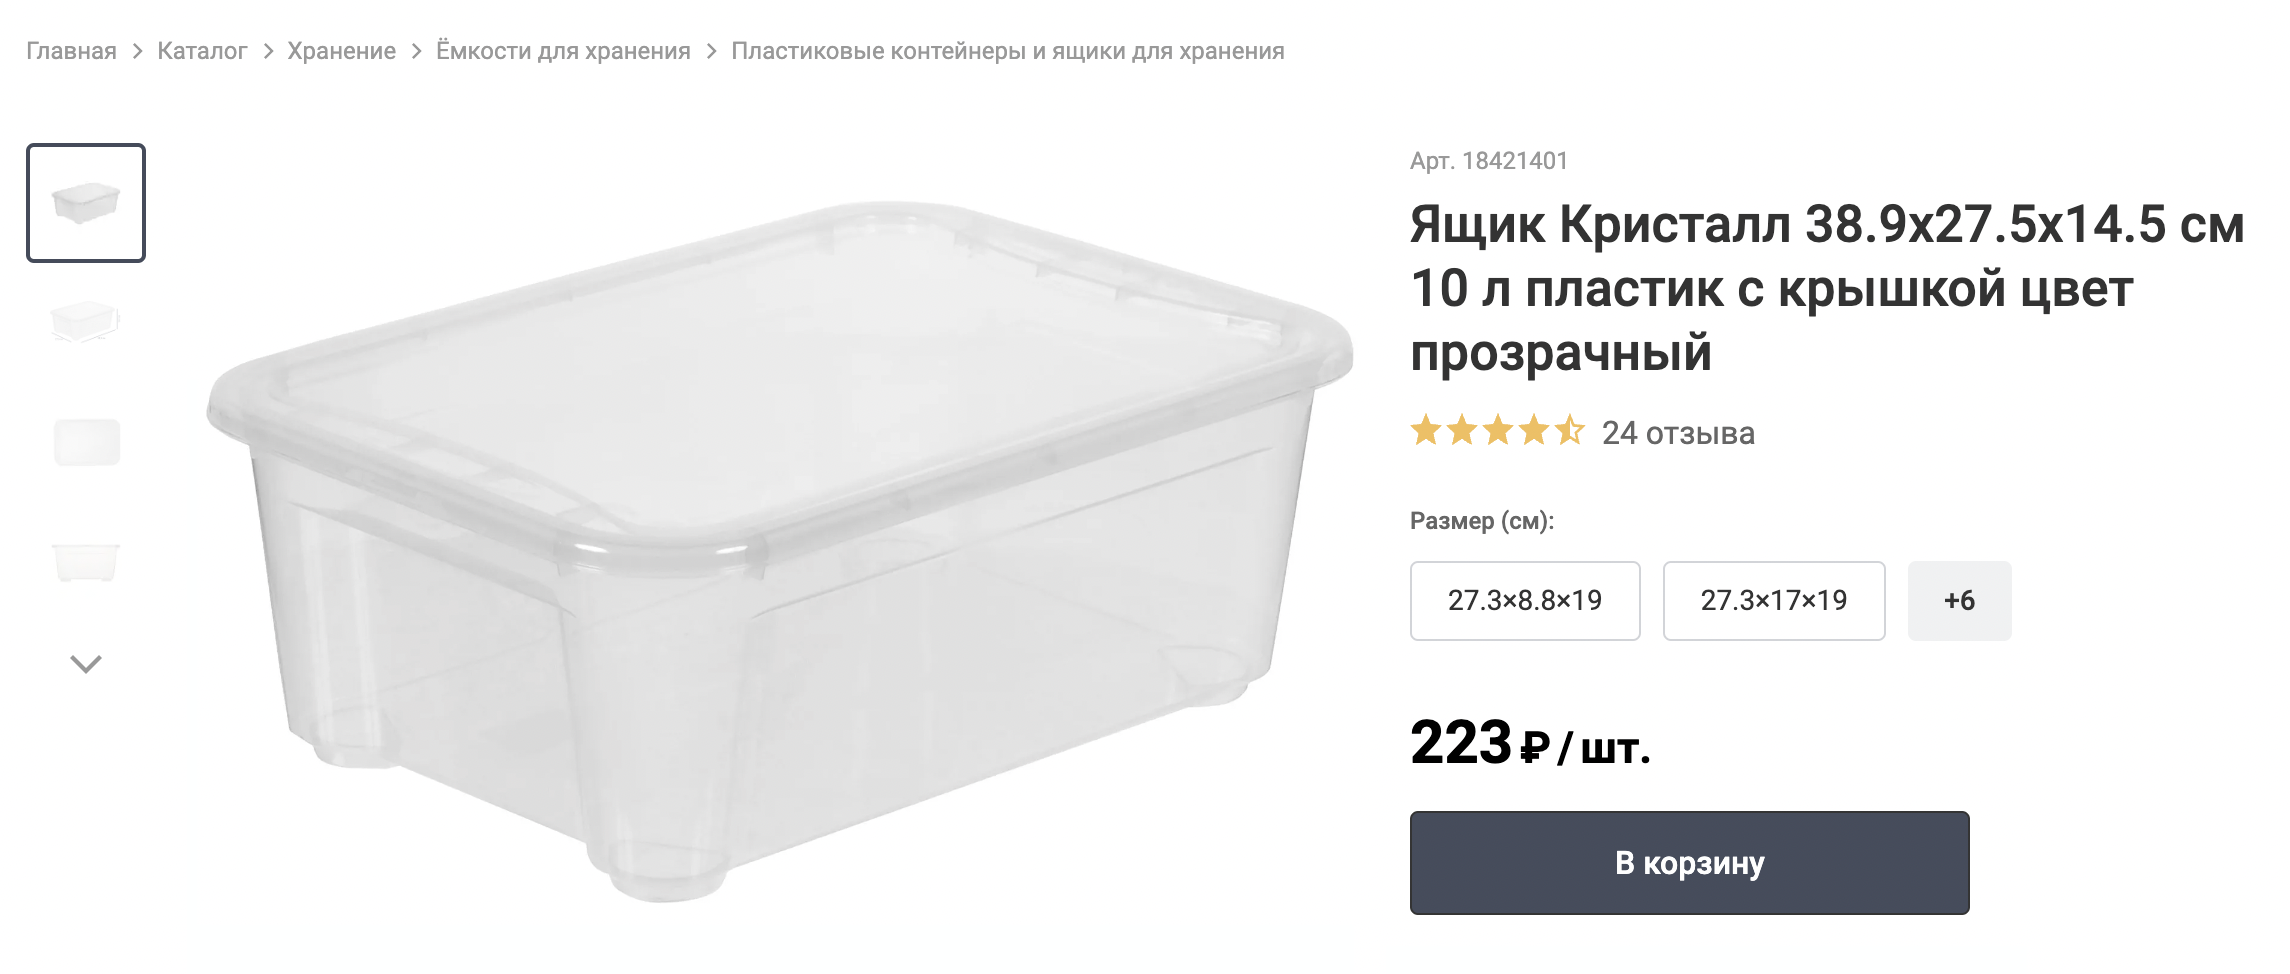 Мы купили такой контейнер в «Леруа Мерлене». Источник: leroymerlin.ru